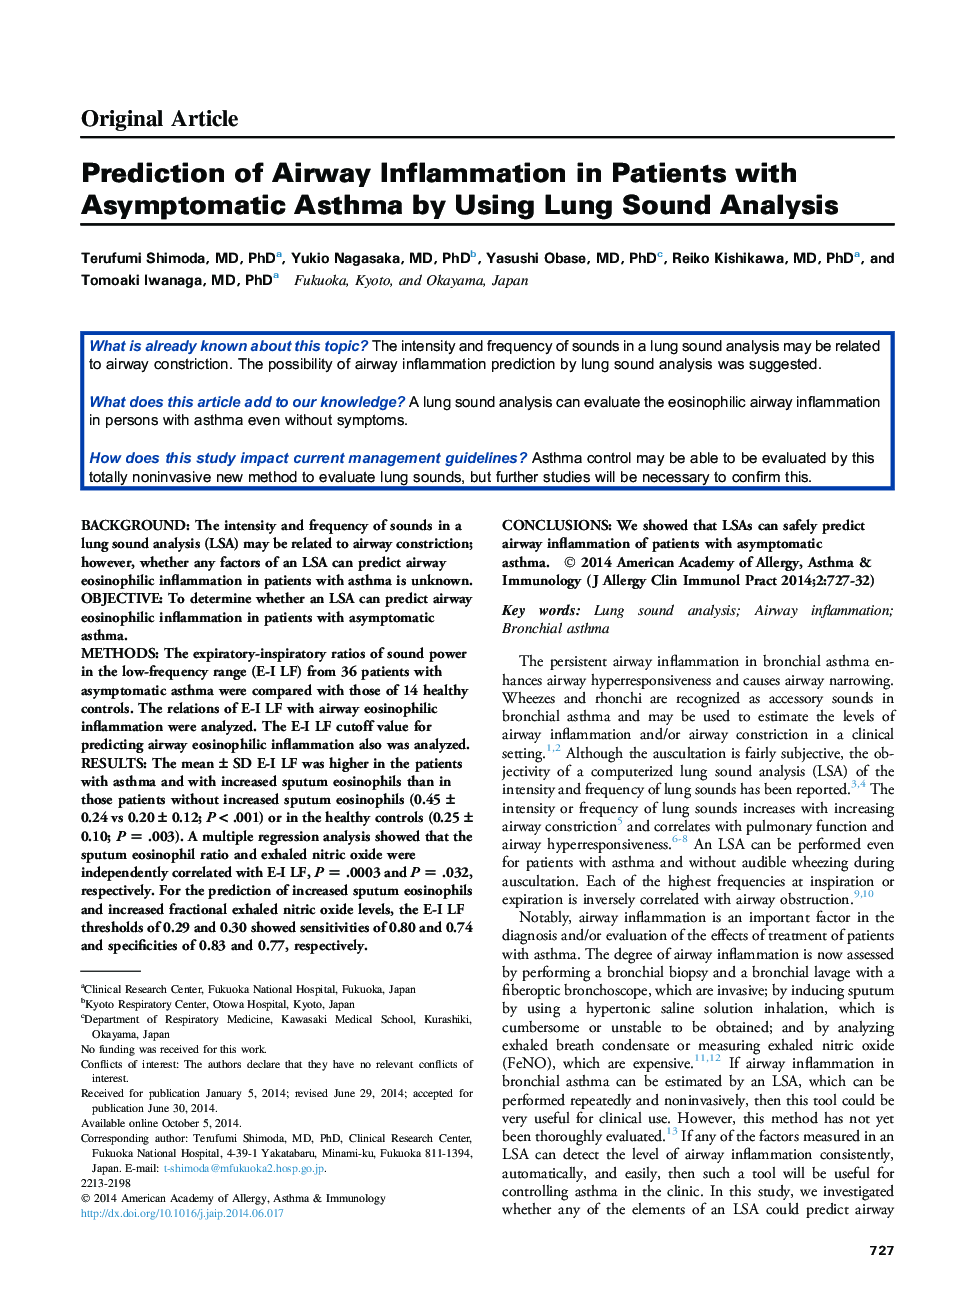 پیش بینی التهاب هوایی در بیماران مبتلا به آسم بدون علامت با استفاده از آنالیز صدا ص 